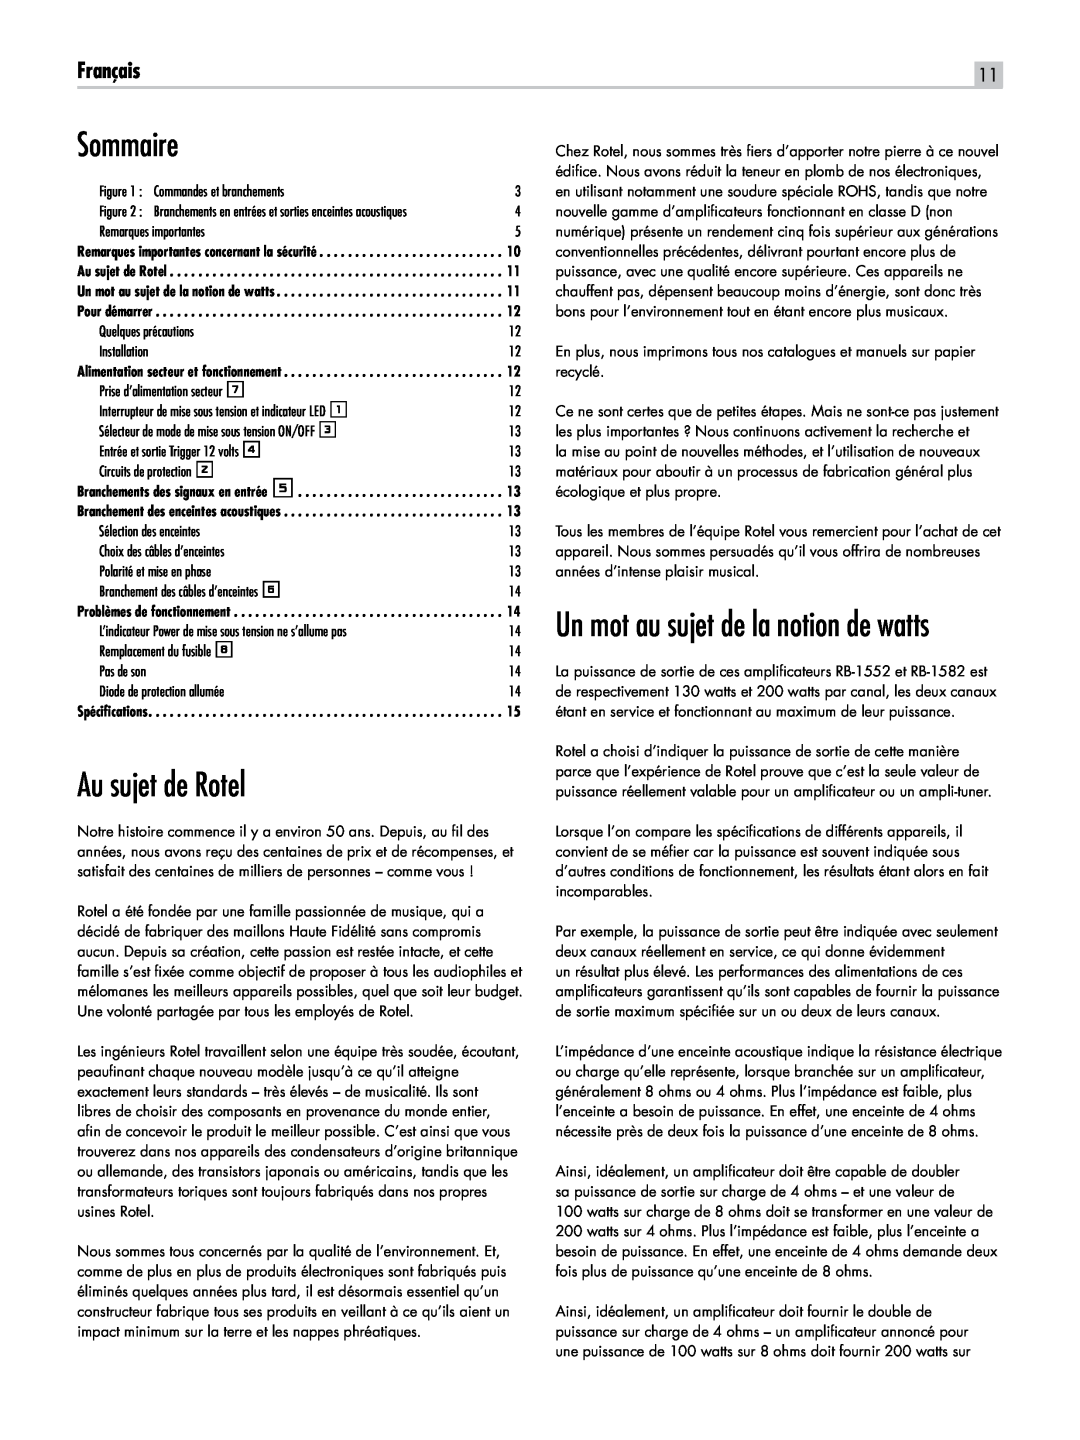 Rotel RB-1582, RB-1552 owner manual Sommaire, Au sujet de Rotel, Français, Un mot au sujet de la notion de watts 